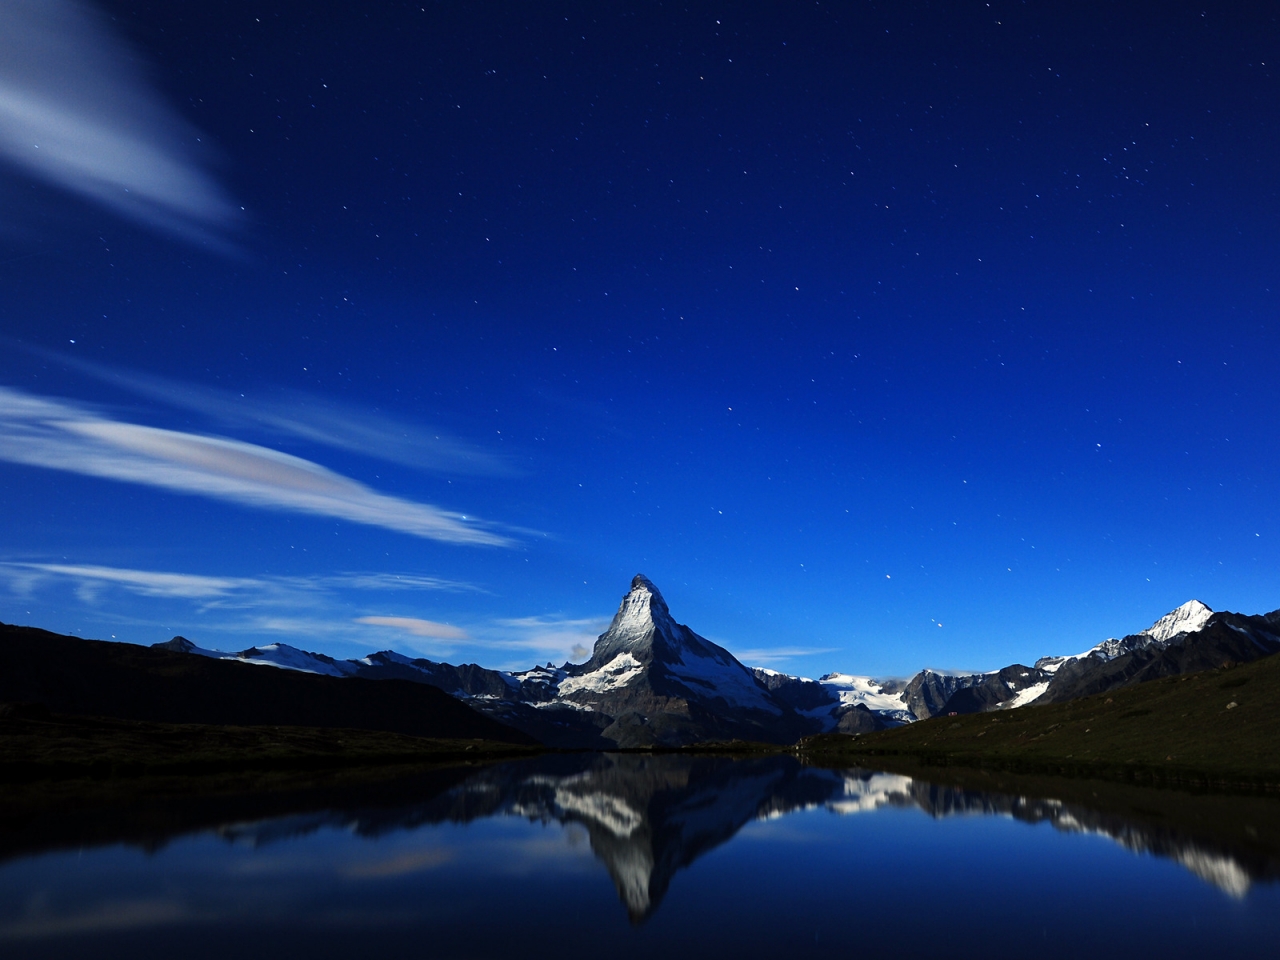 Matterhorn Midnight Reflection for 1280 x 960 resolution